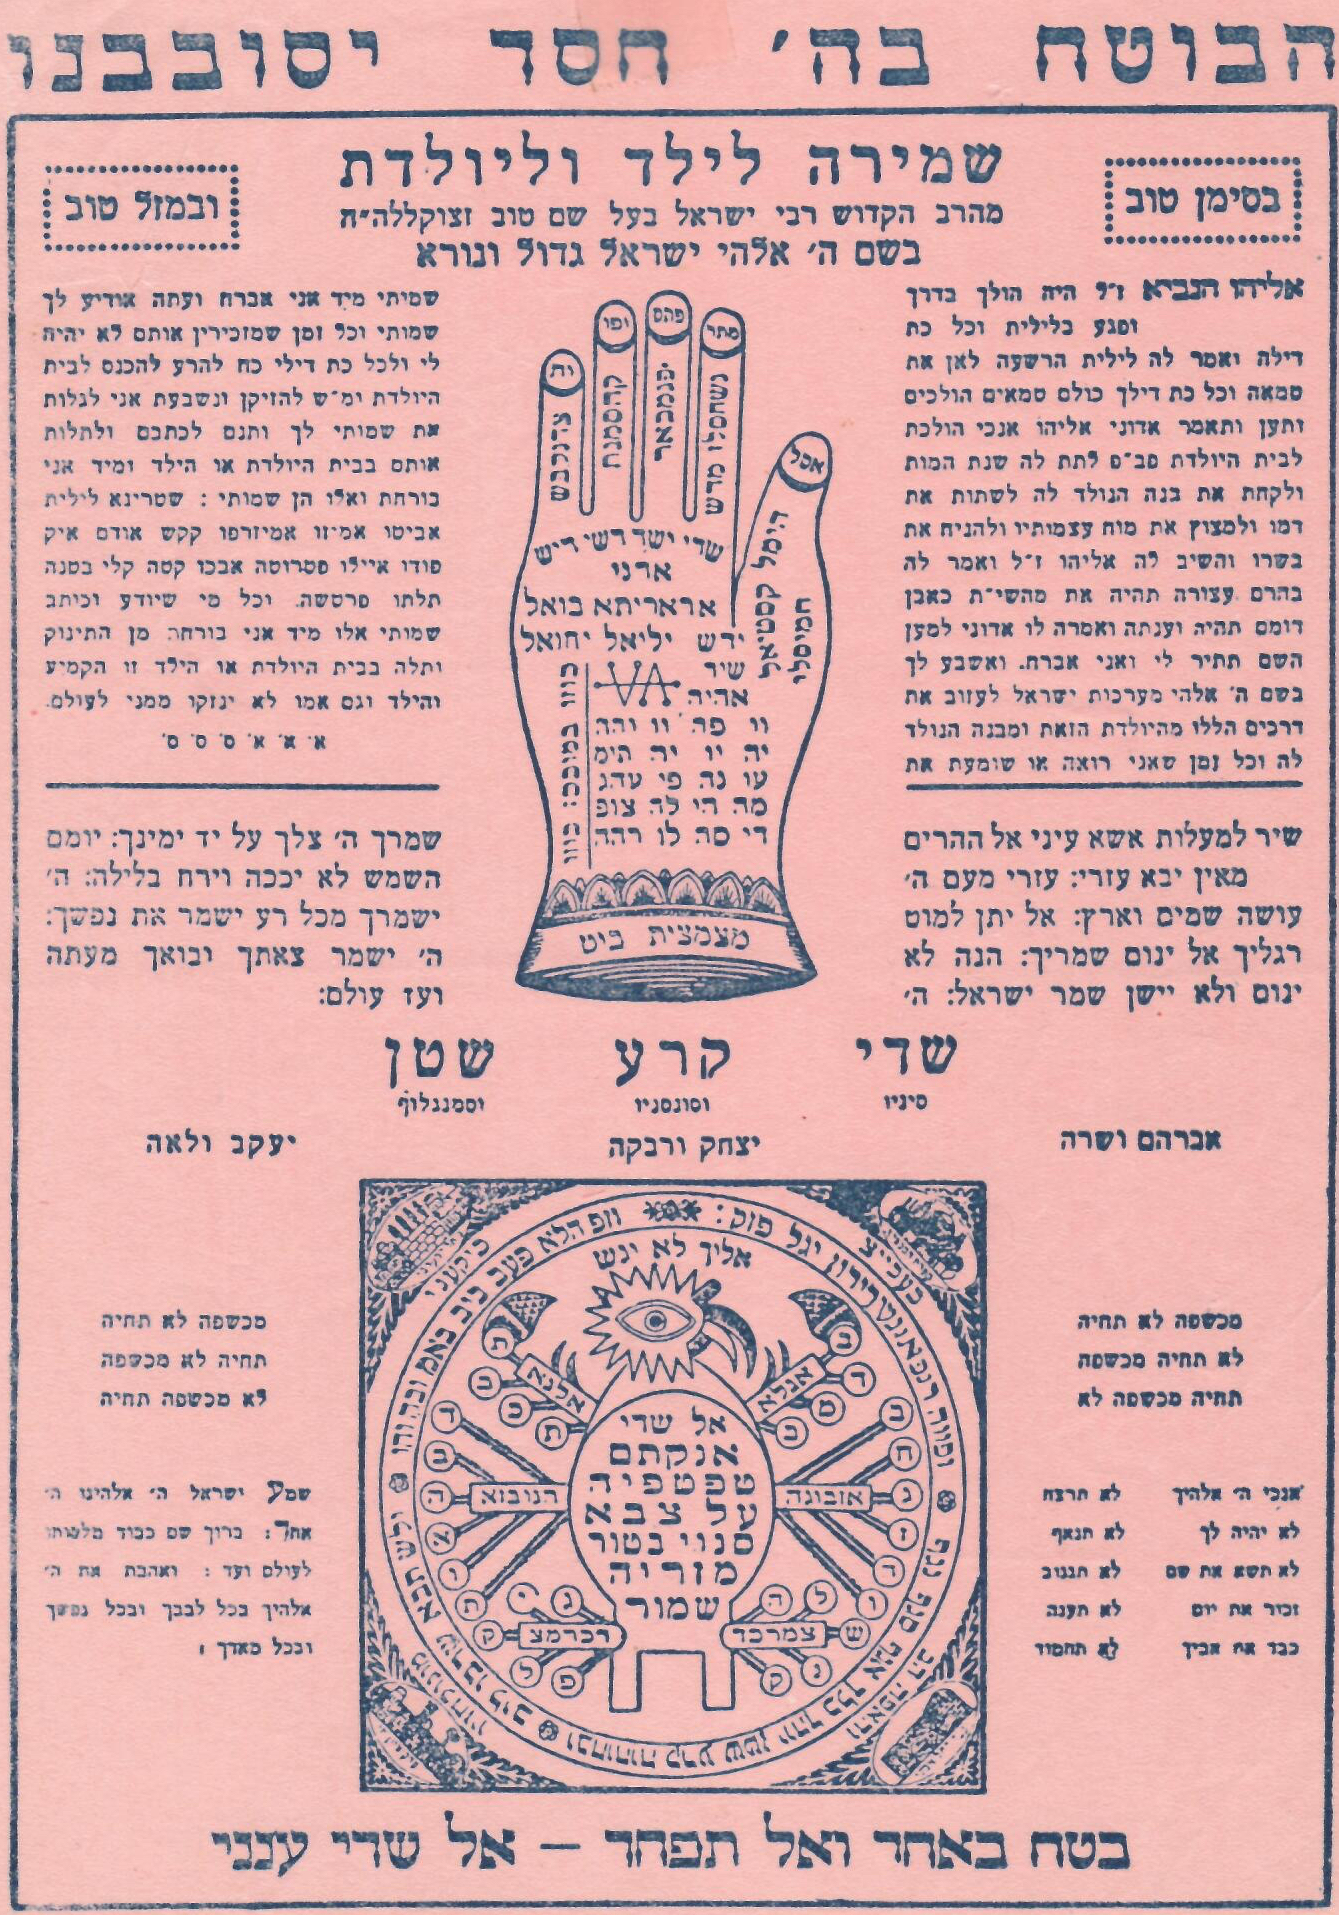 A pamphlet, written in Hebrew